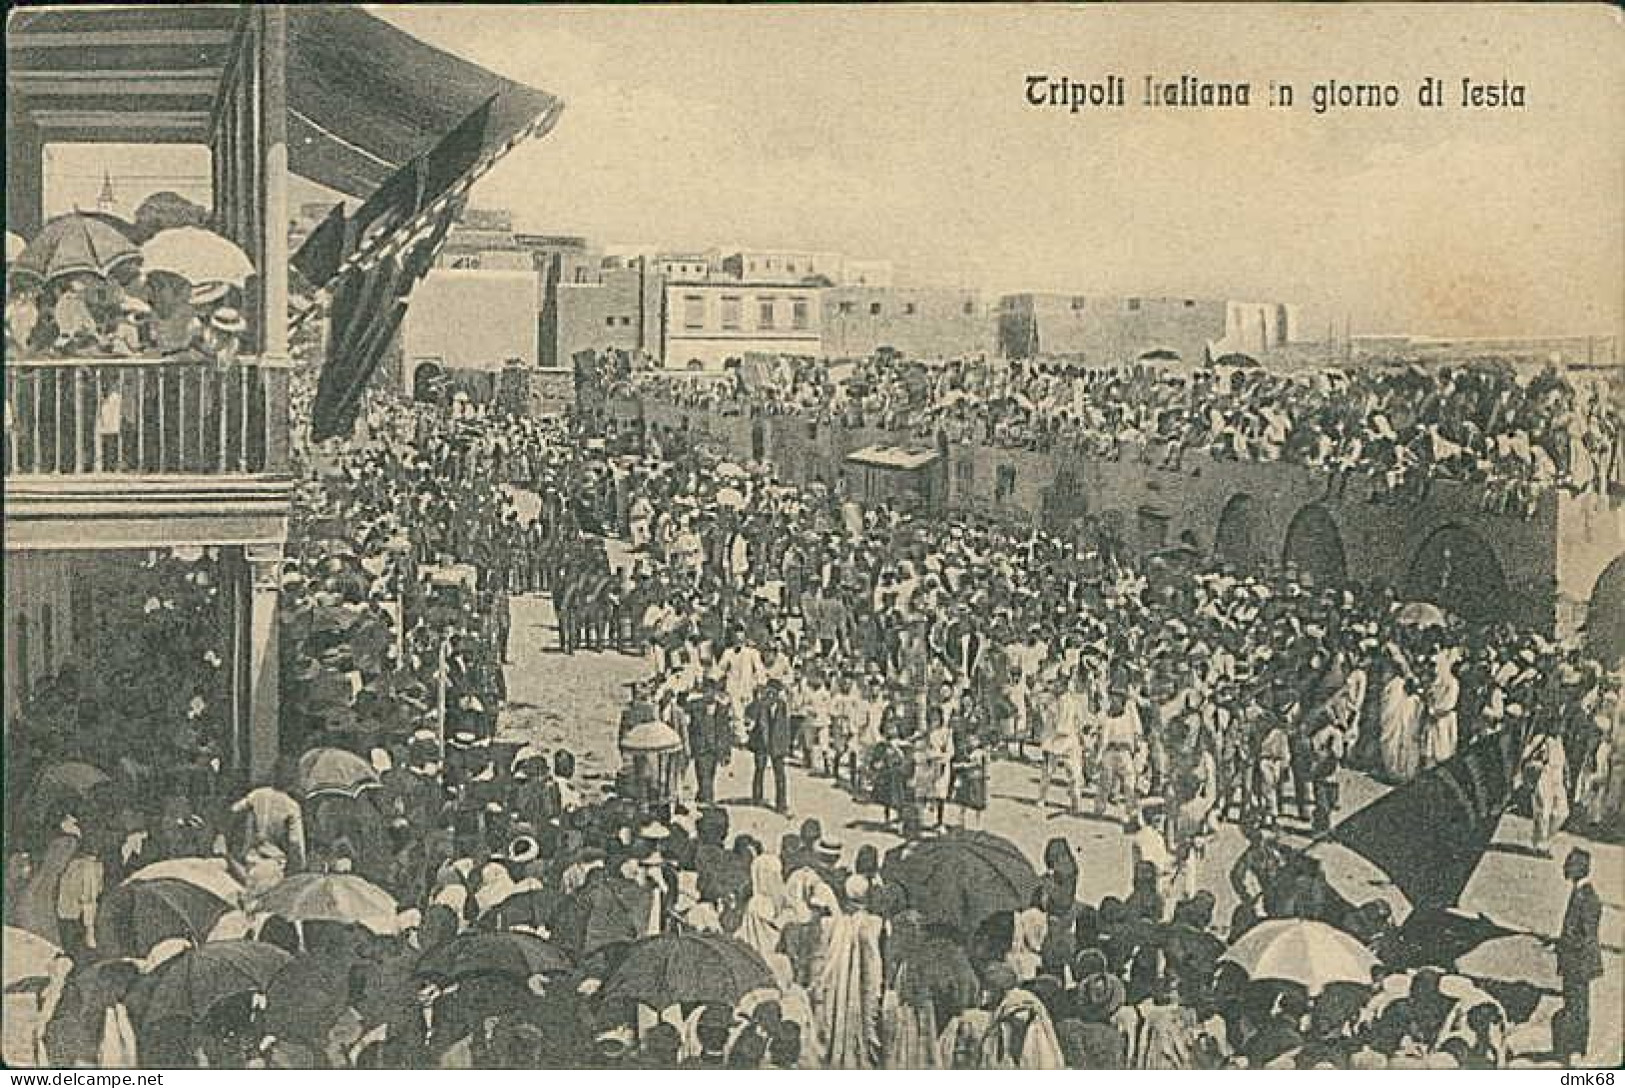 LIBIA / LIBYA - TRIPOLI ITALIANA IN GIORNO DI FESTA - ED. ALTEROCCA 1910s (12456) - Libia